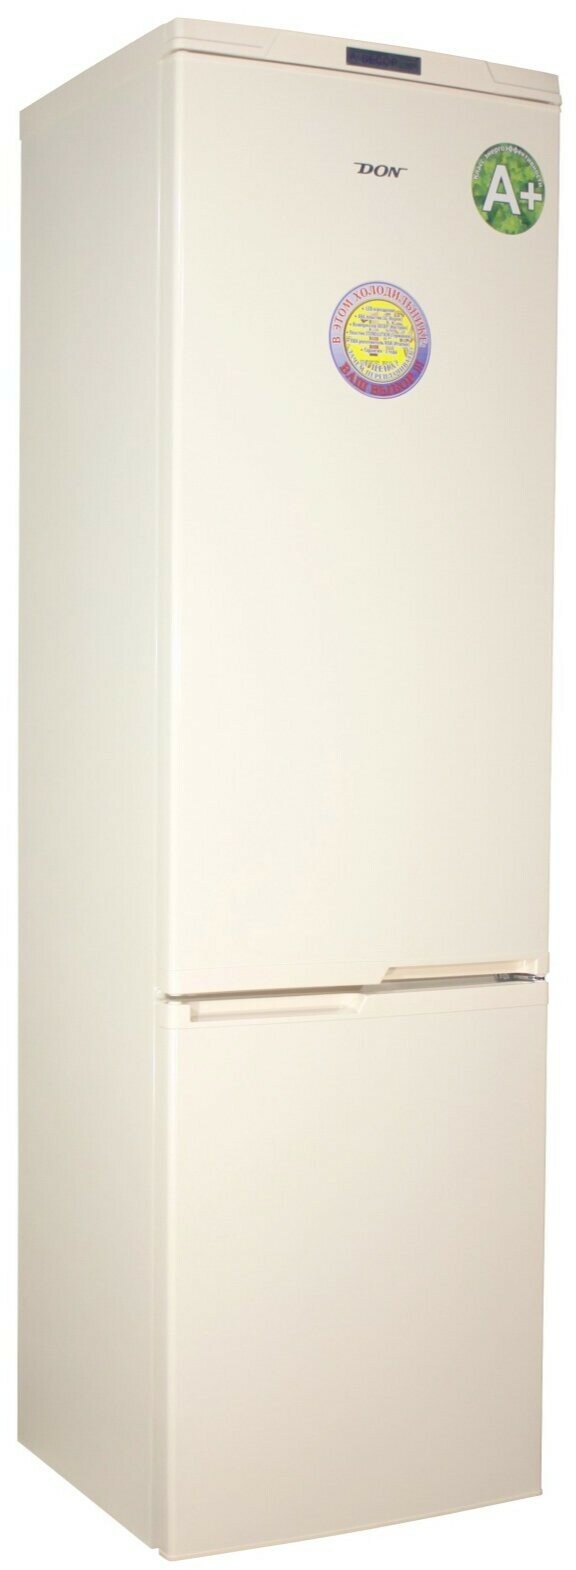 Холодильник DON R 295 cлоновая кость (S)